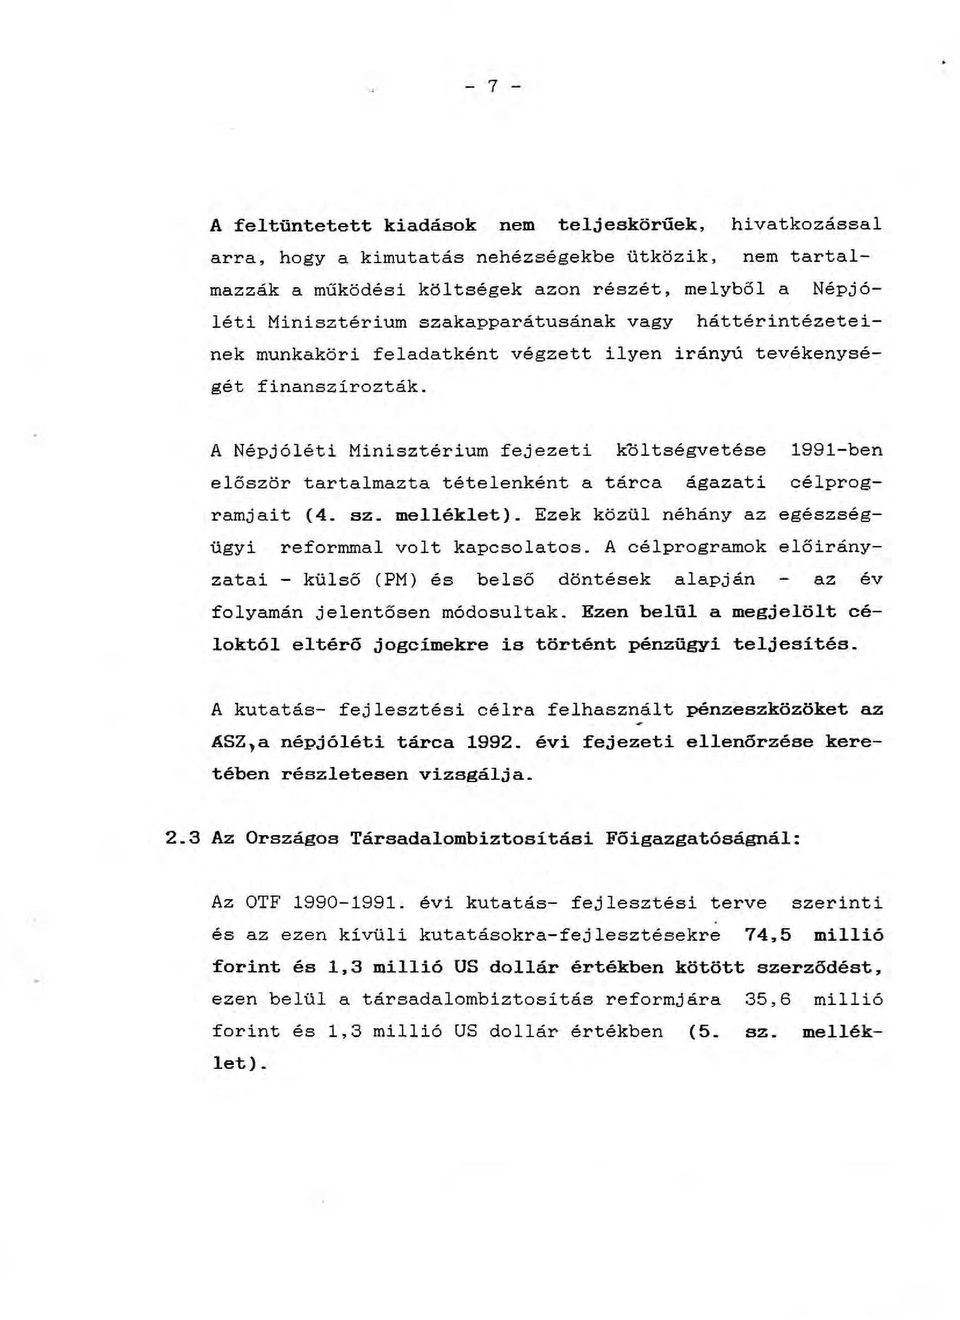 A Népjóléti Minisztérium fejezeti koltségvetése 1991-ben először tartalmazta tételenként a tárca ágazati célprogramjait (4. sz. melléklet).